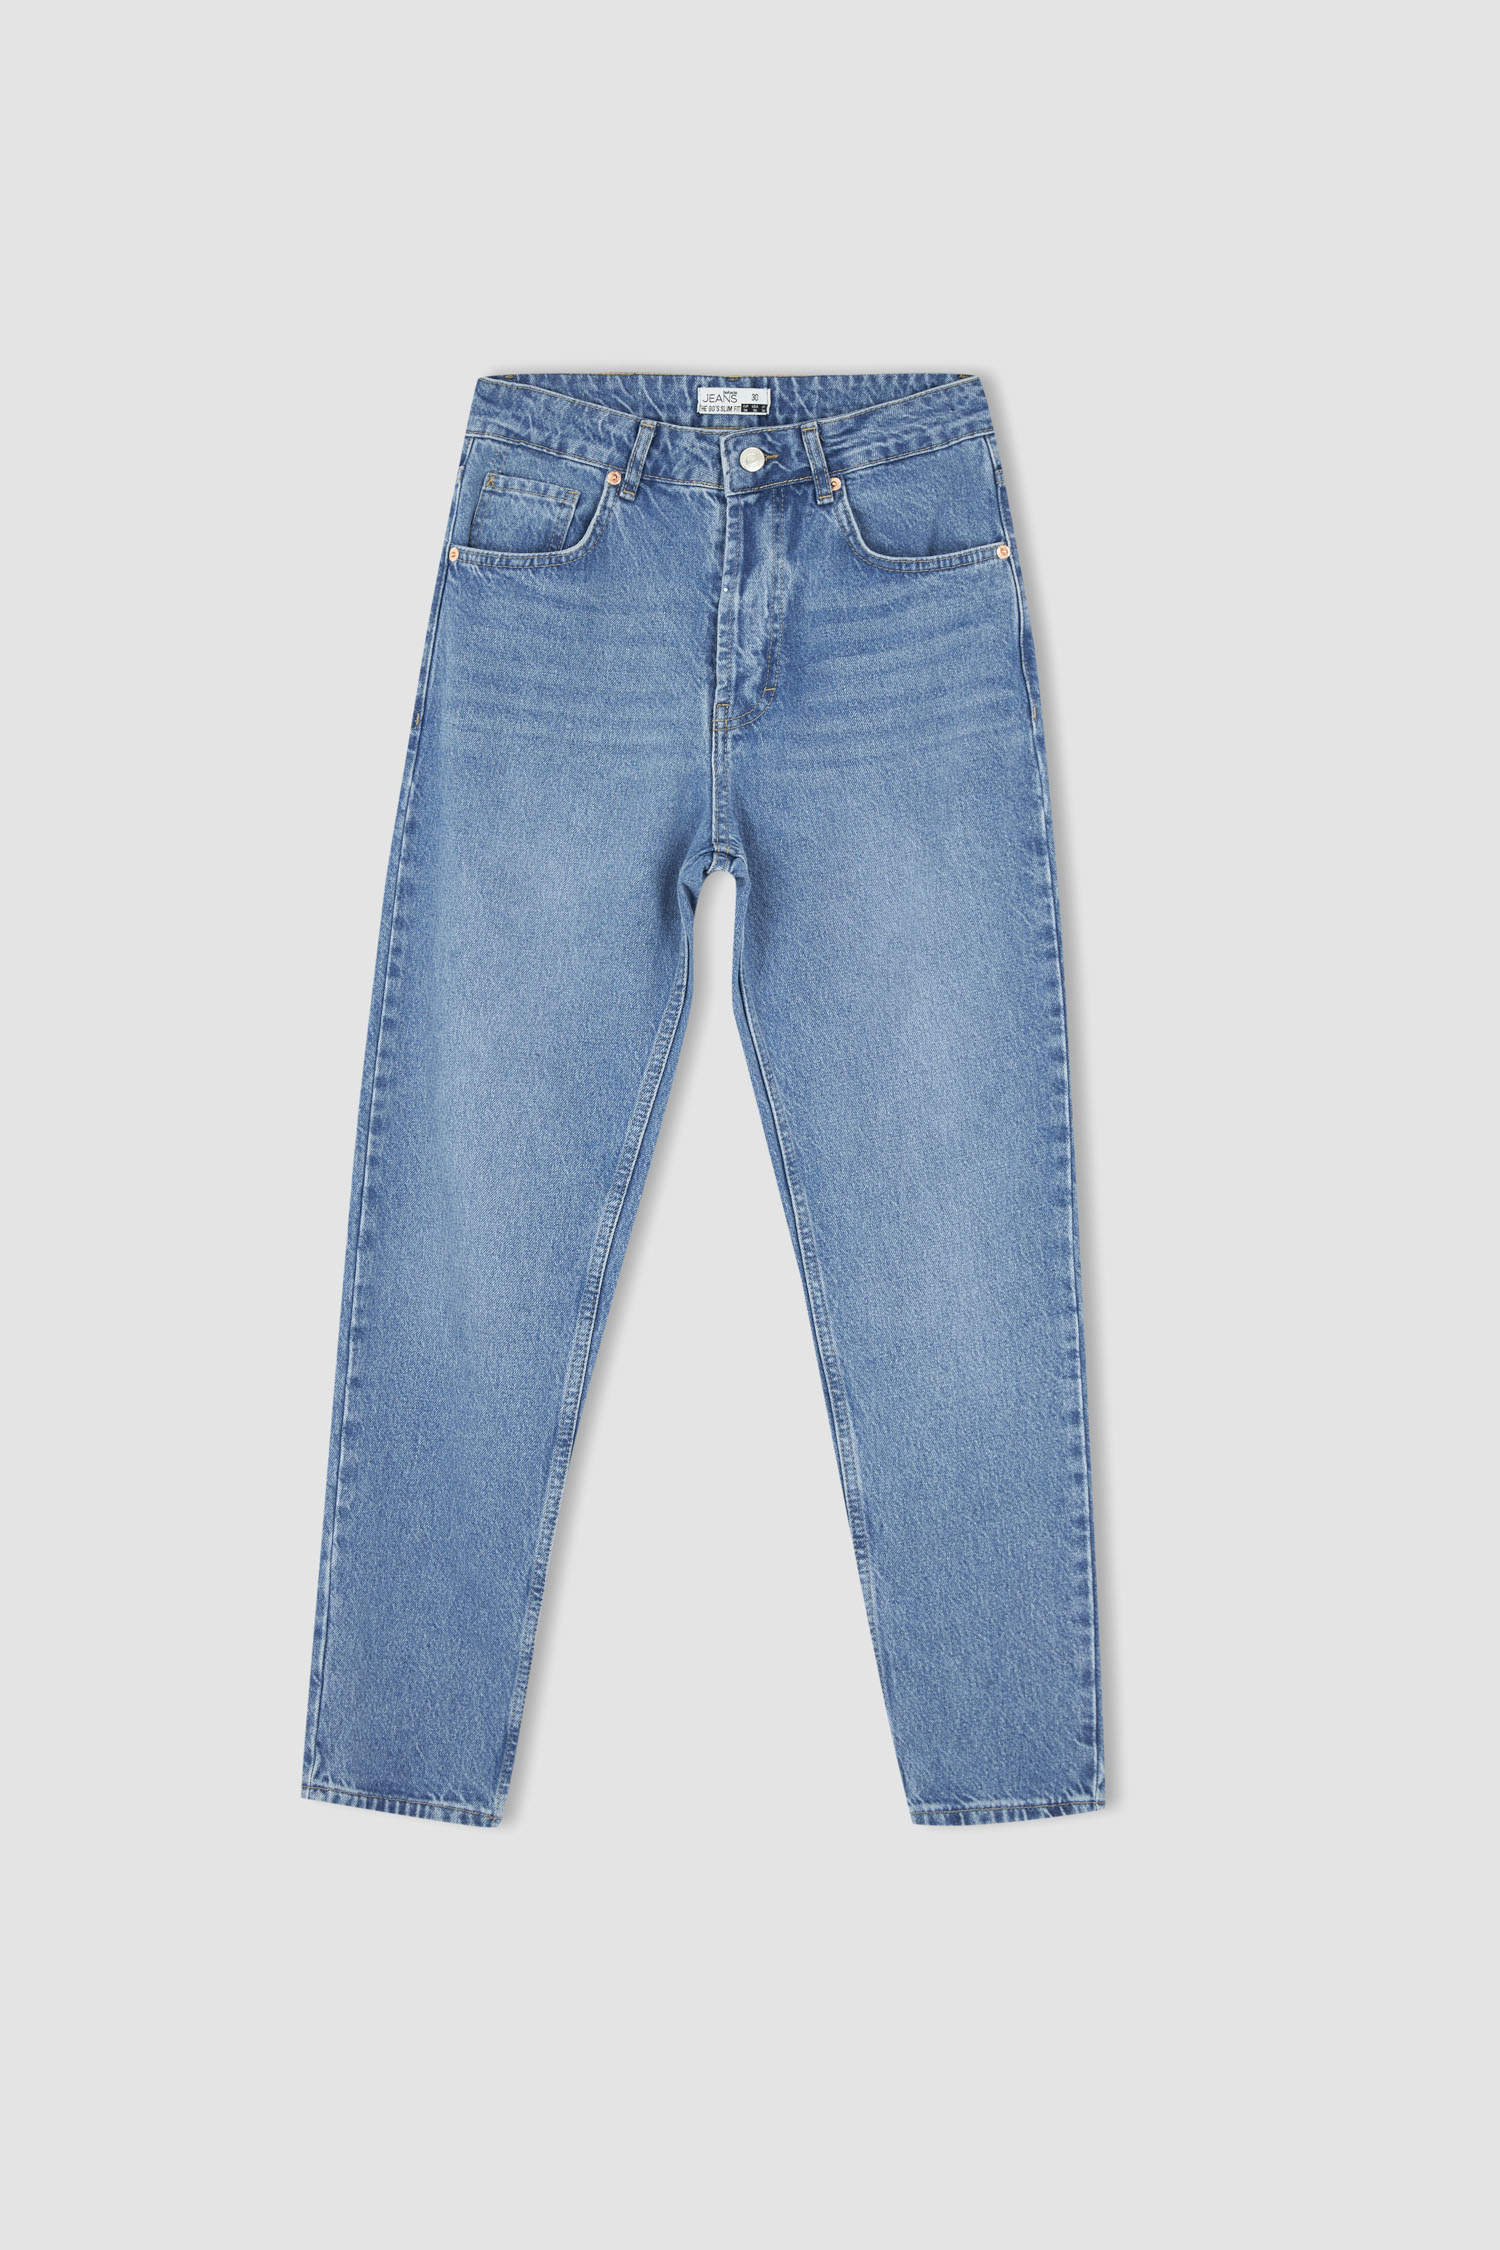 Defacto 90's Slim Fit Nomal Bel Sürdürülebilir Jean pantolon. 7